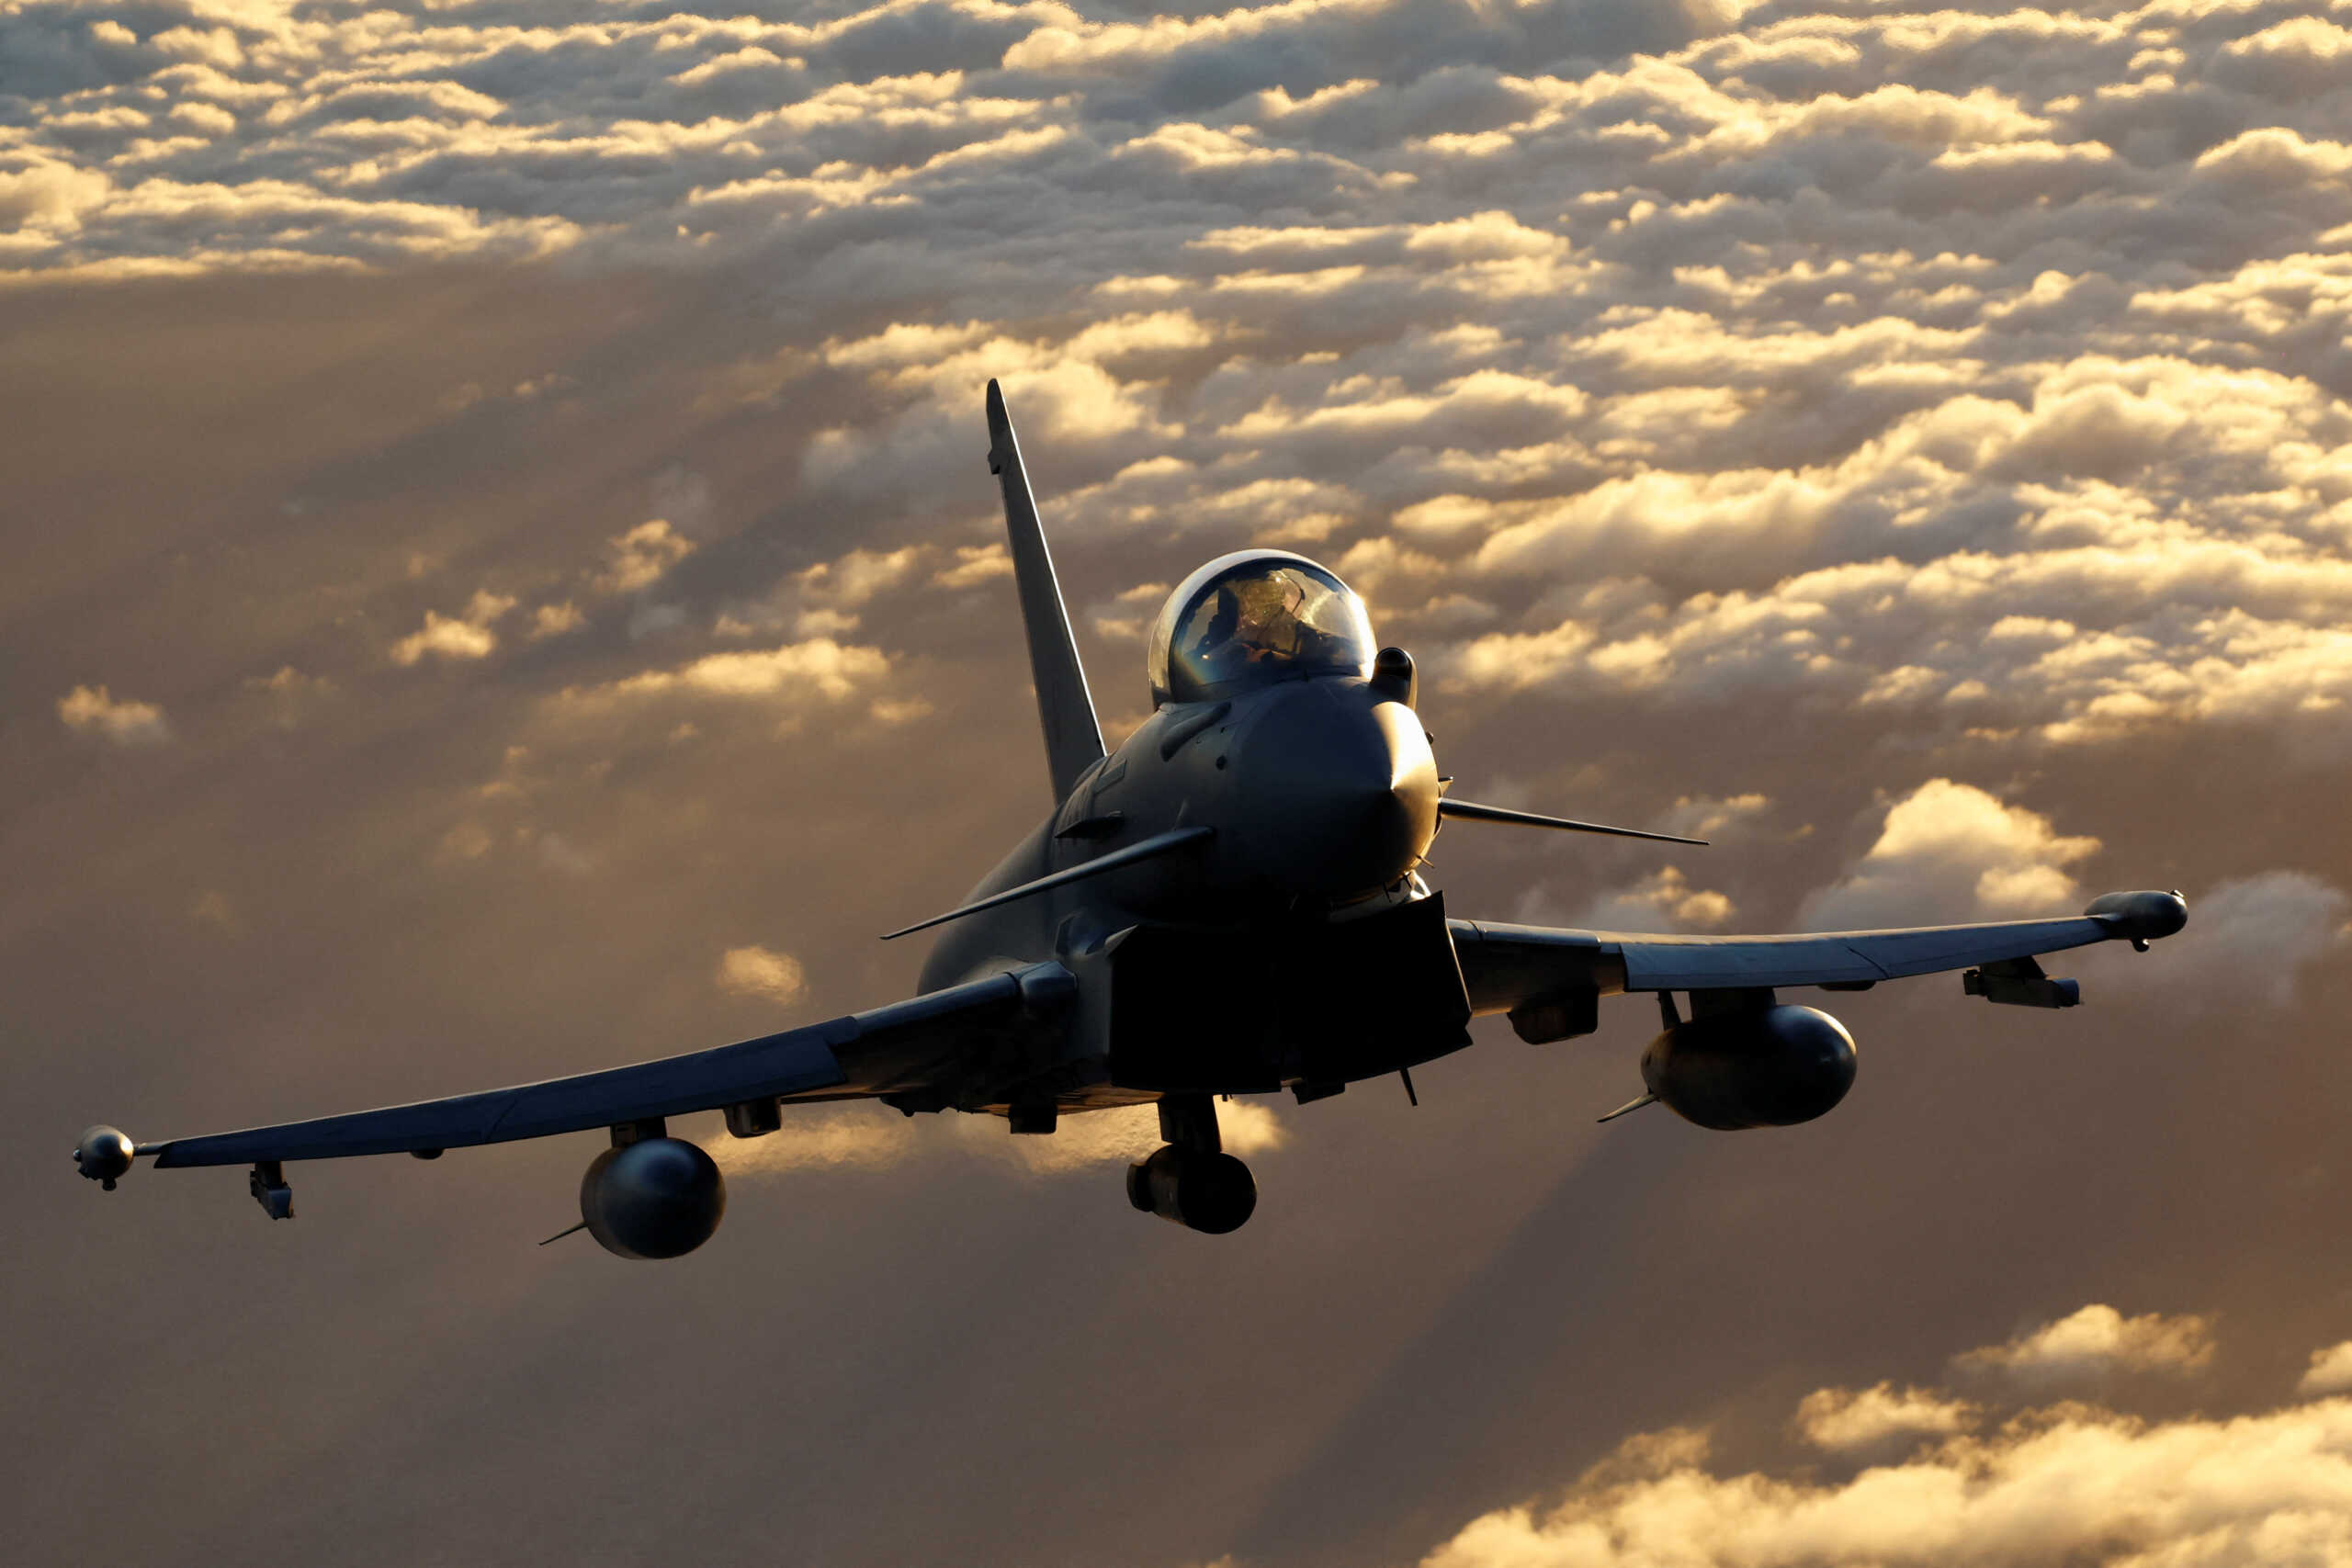 Η Τουρκία διαπραγματεύεται με την Βρετανία για την απόκτηση 40 μαχητικών αεροσκαφών Eurofighter